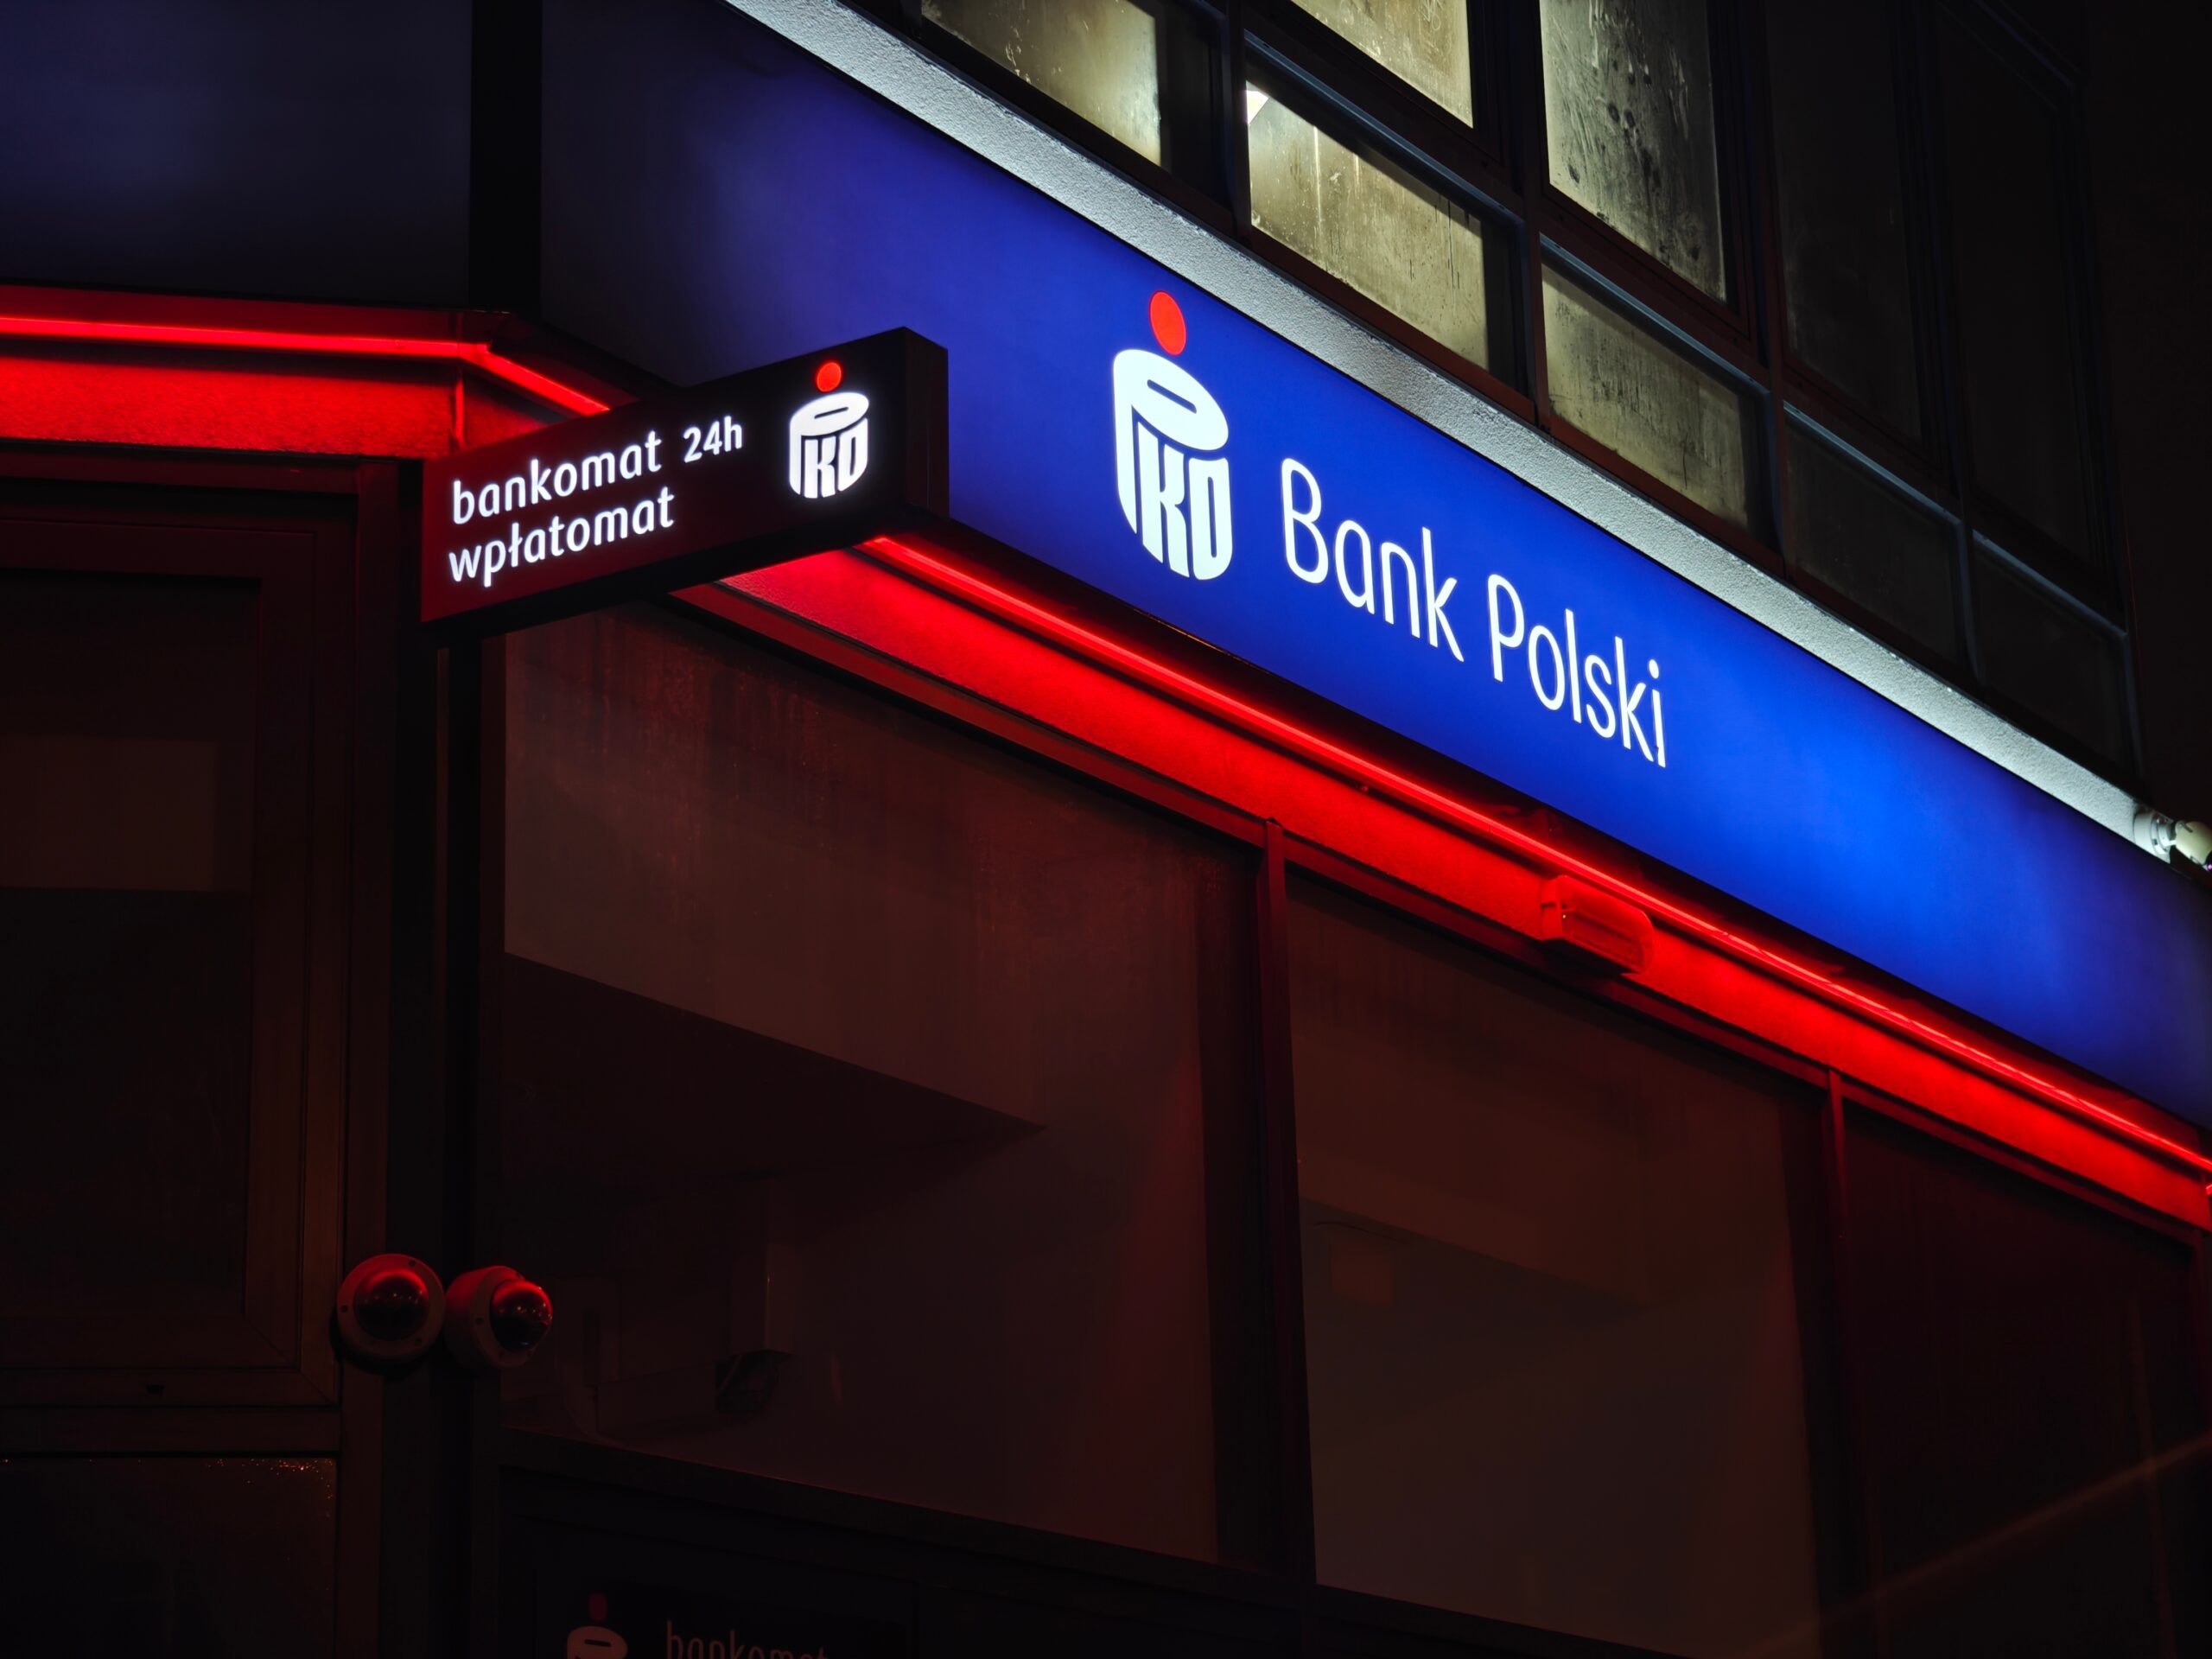 Zdjęcie neonowego szyldu PKO Bank Polski i znaku informacyjnego z napisem "bankomat 24h wpłatomat" w nocy.